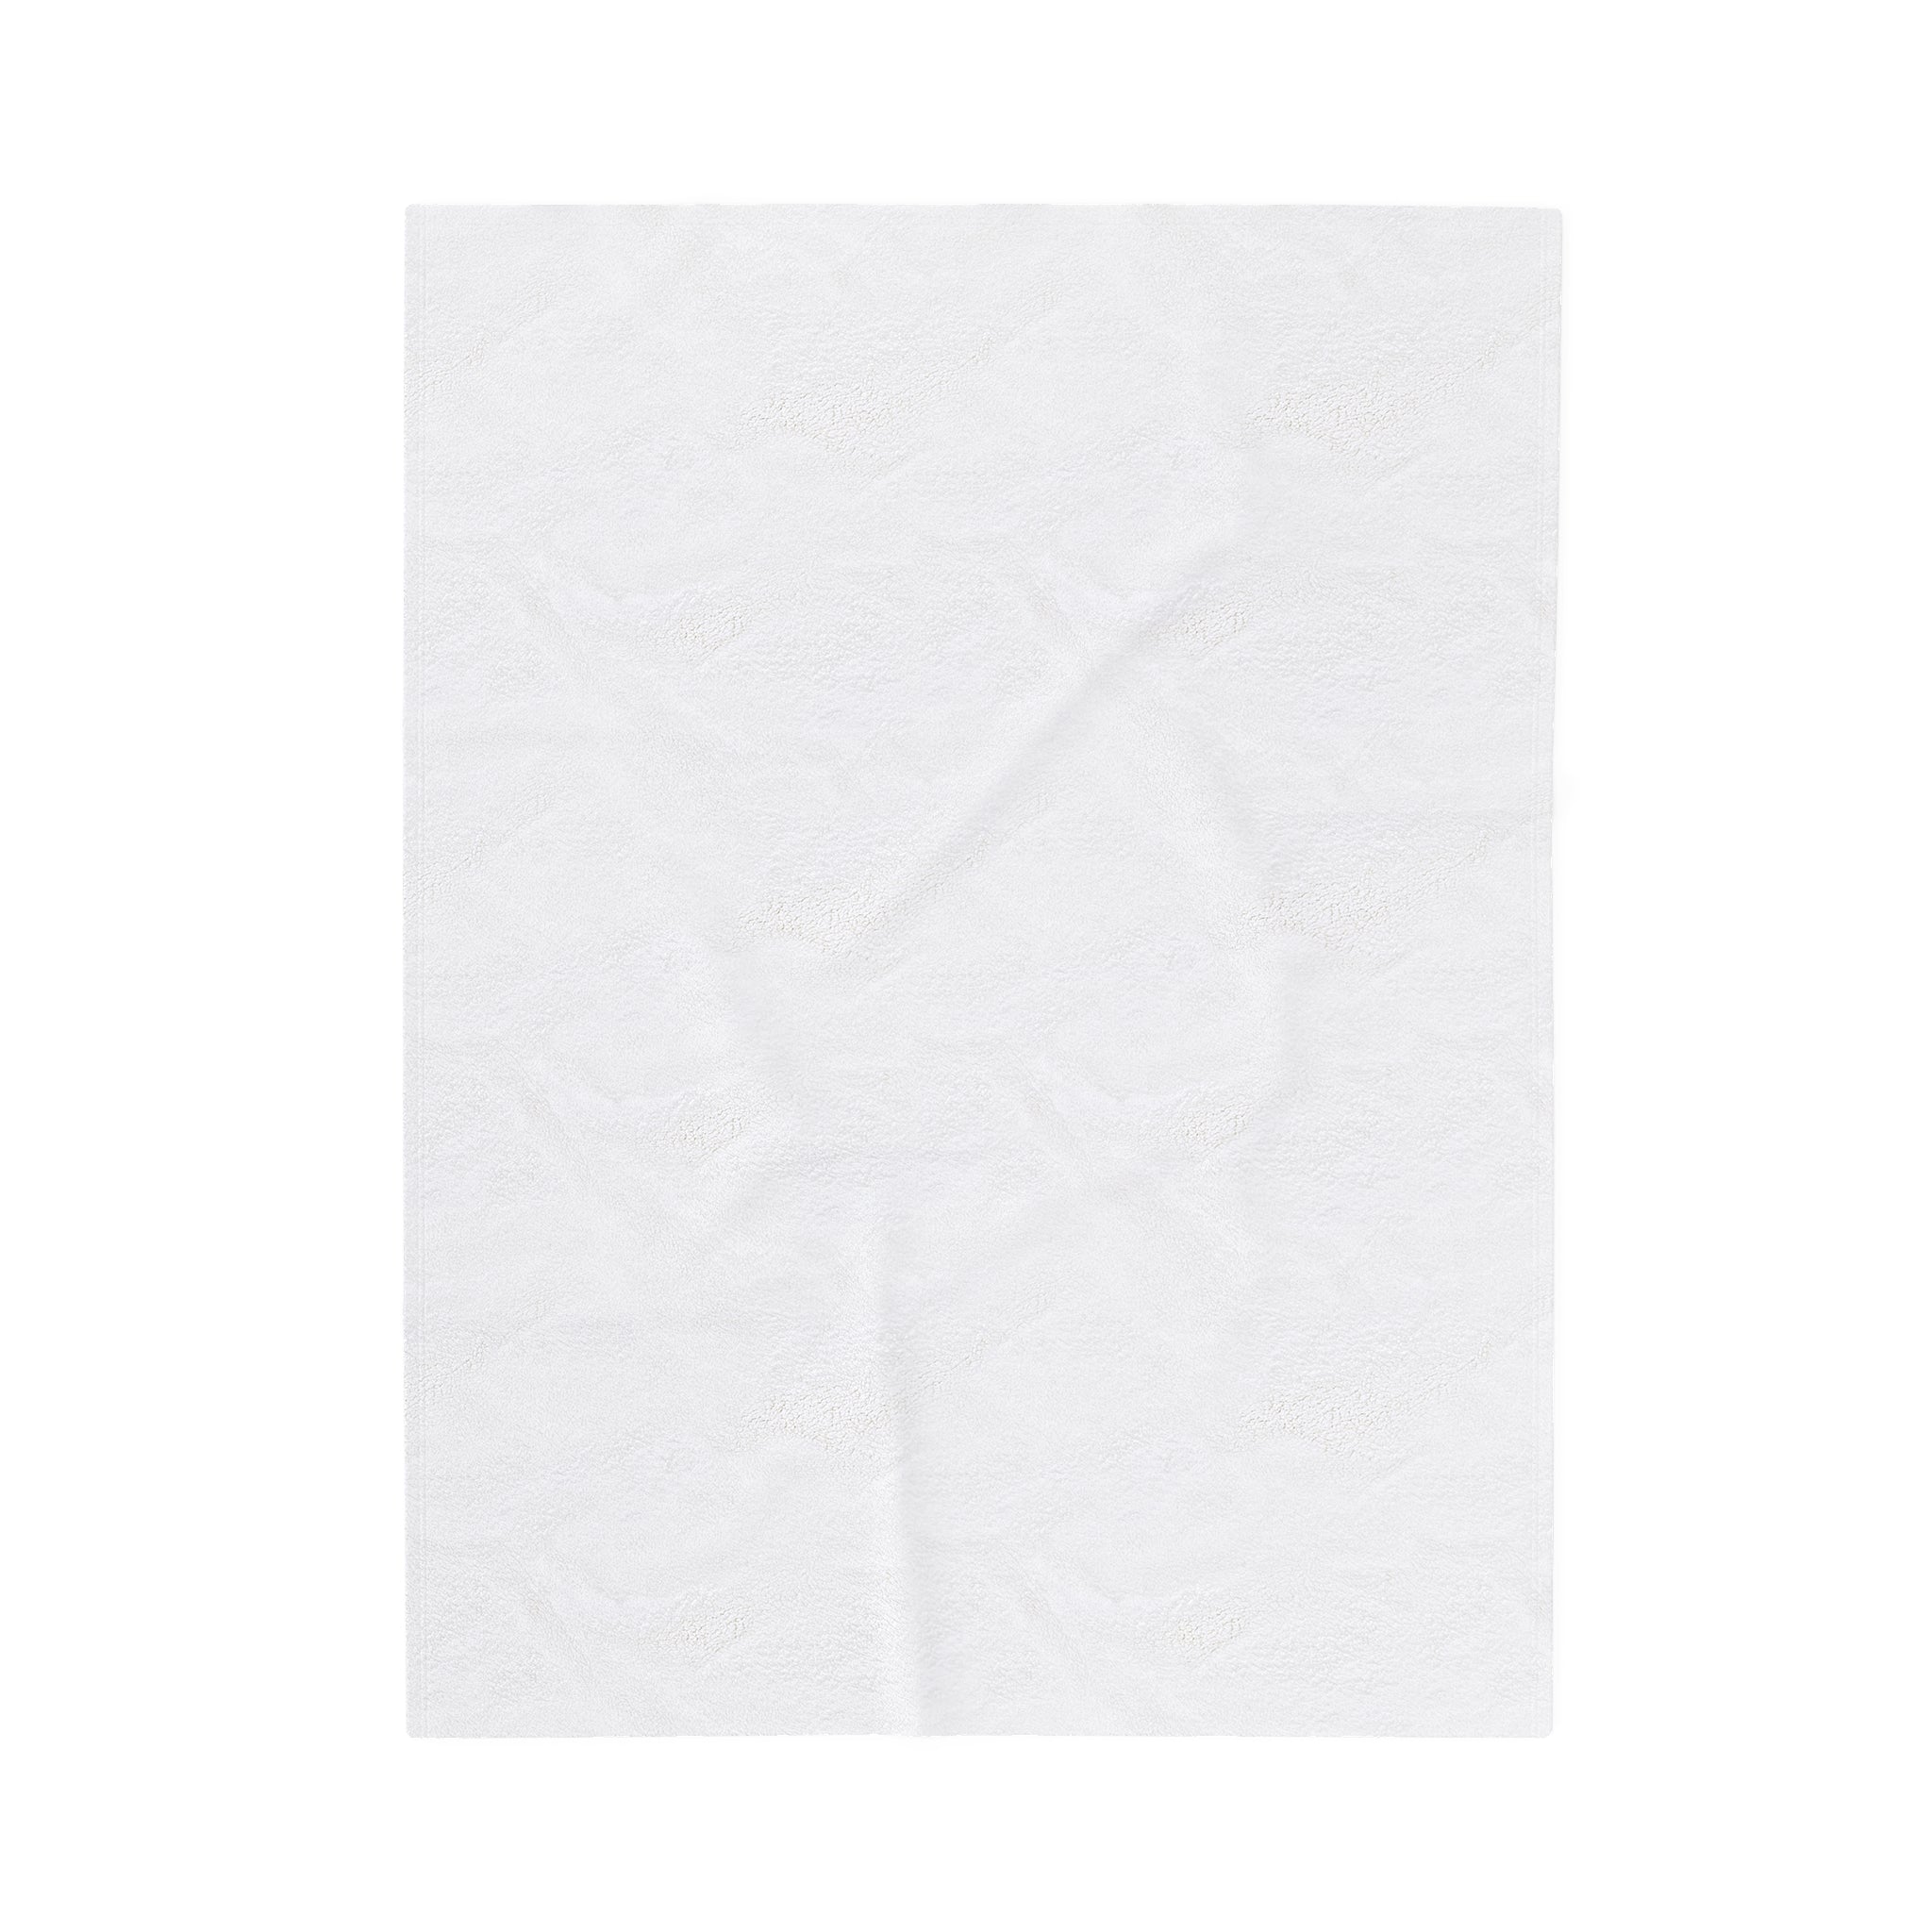 Velveteen Plush Blanket | RETRO SOFTBALL COLLAGE 1